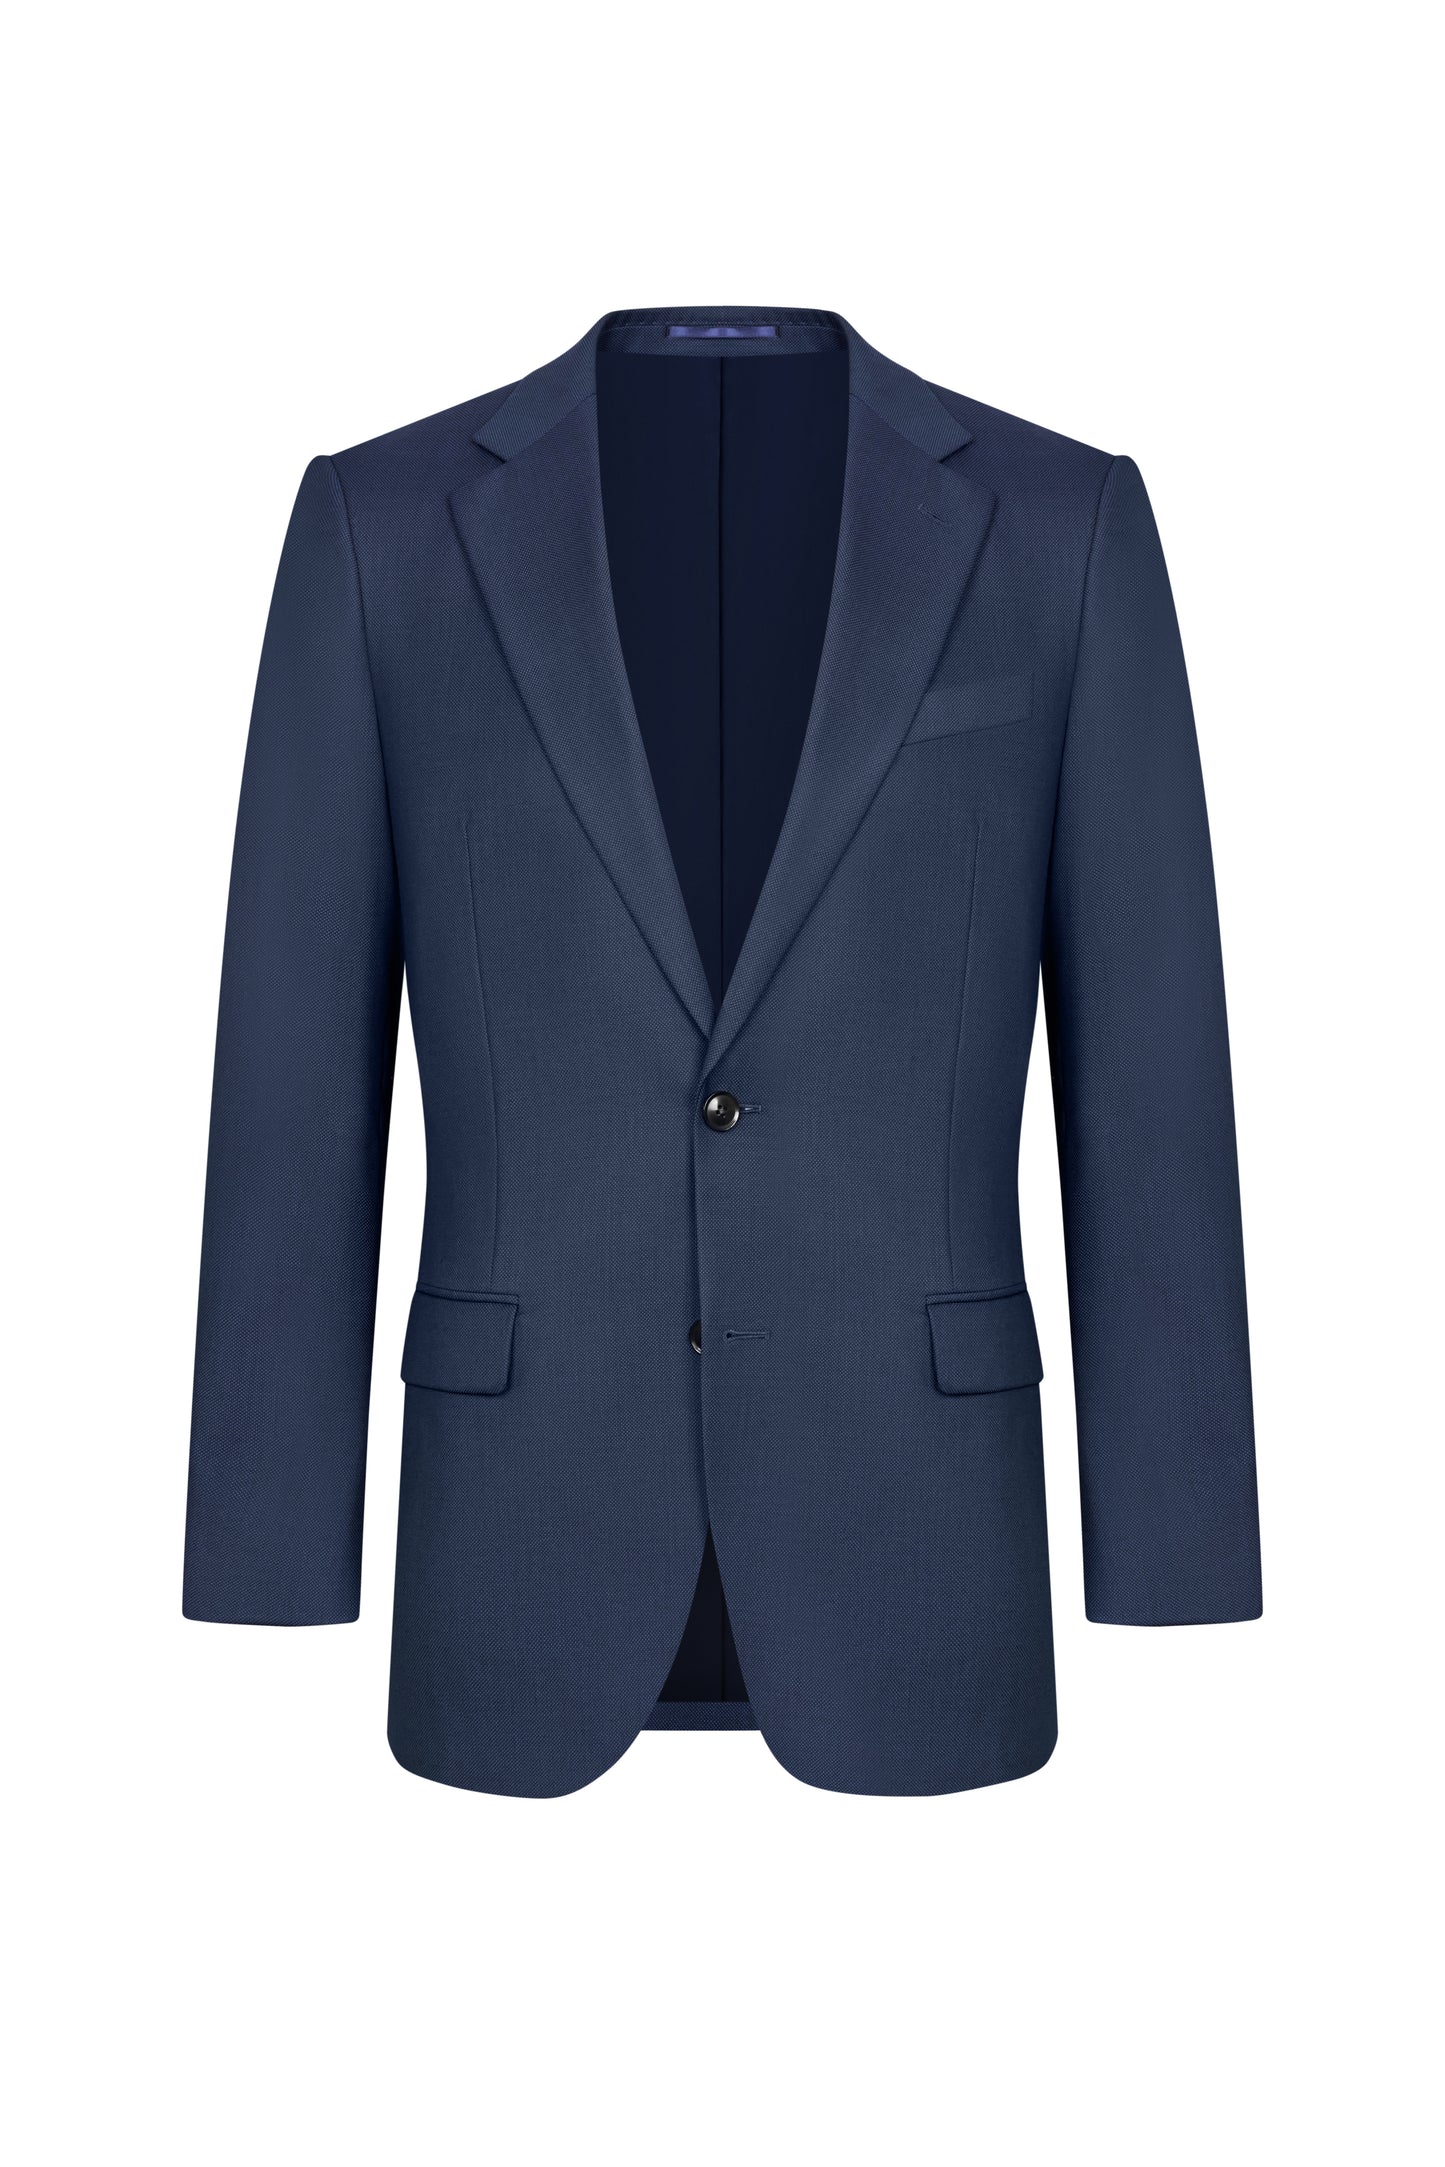 Reda Navy Blue Birdseye Custom Suit